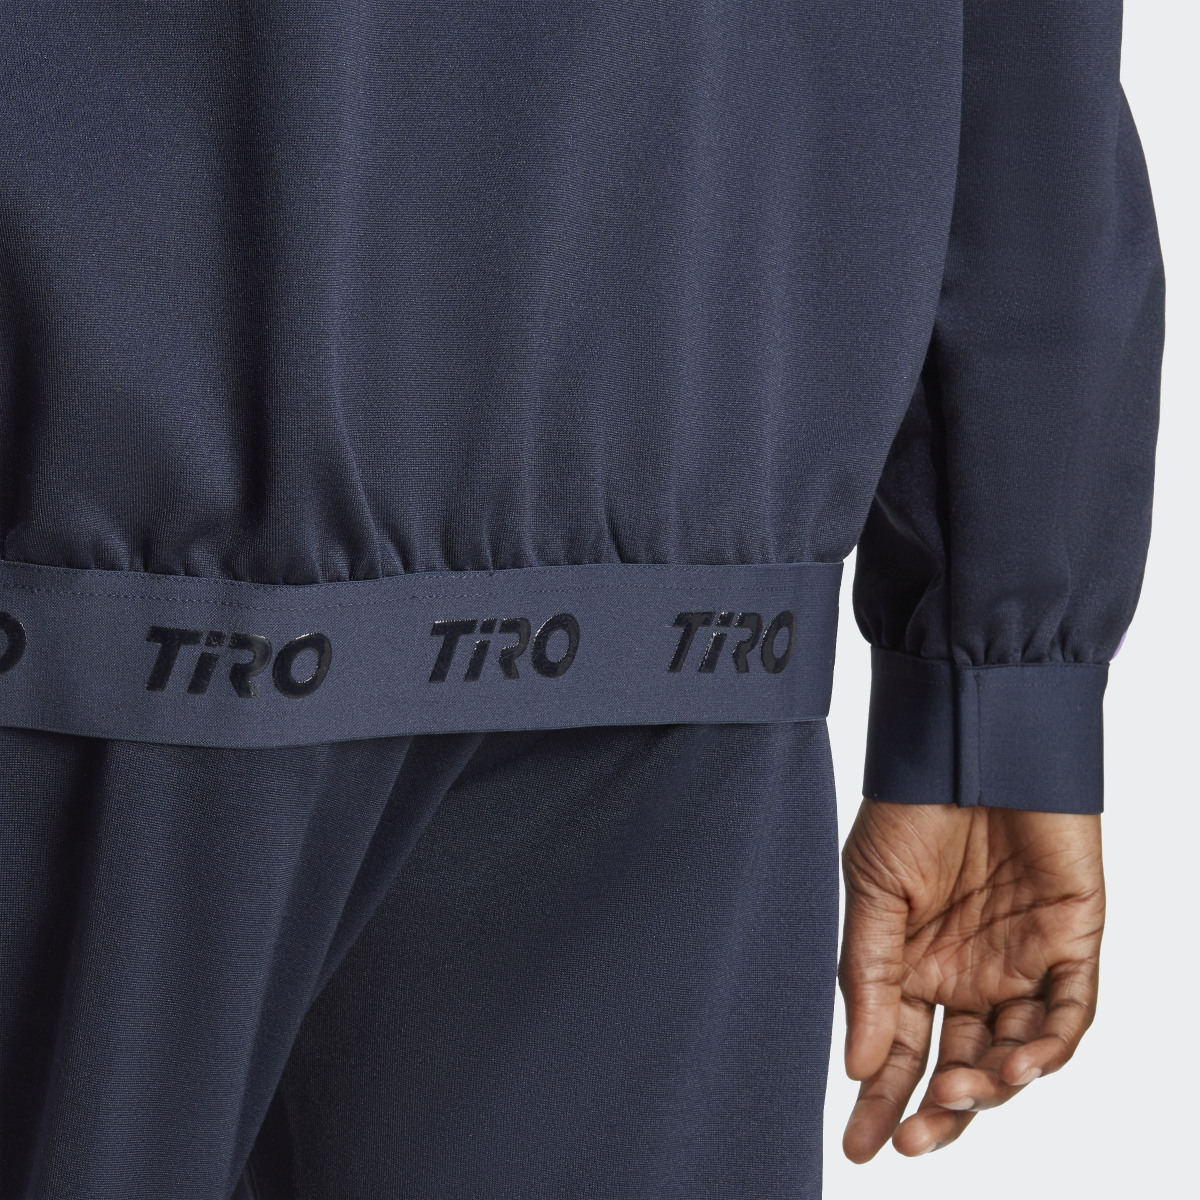 Adidas Tiro Suit-Up Advanced Trainingsjacke. 9